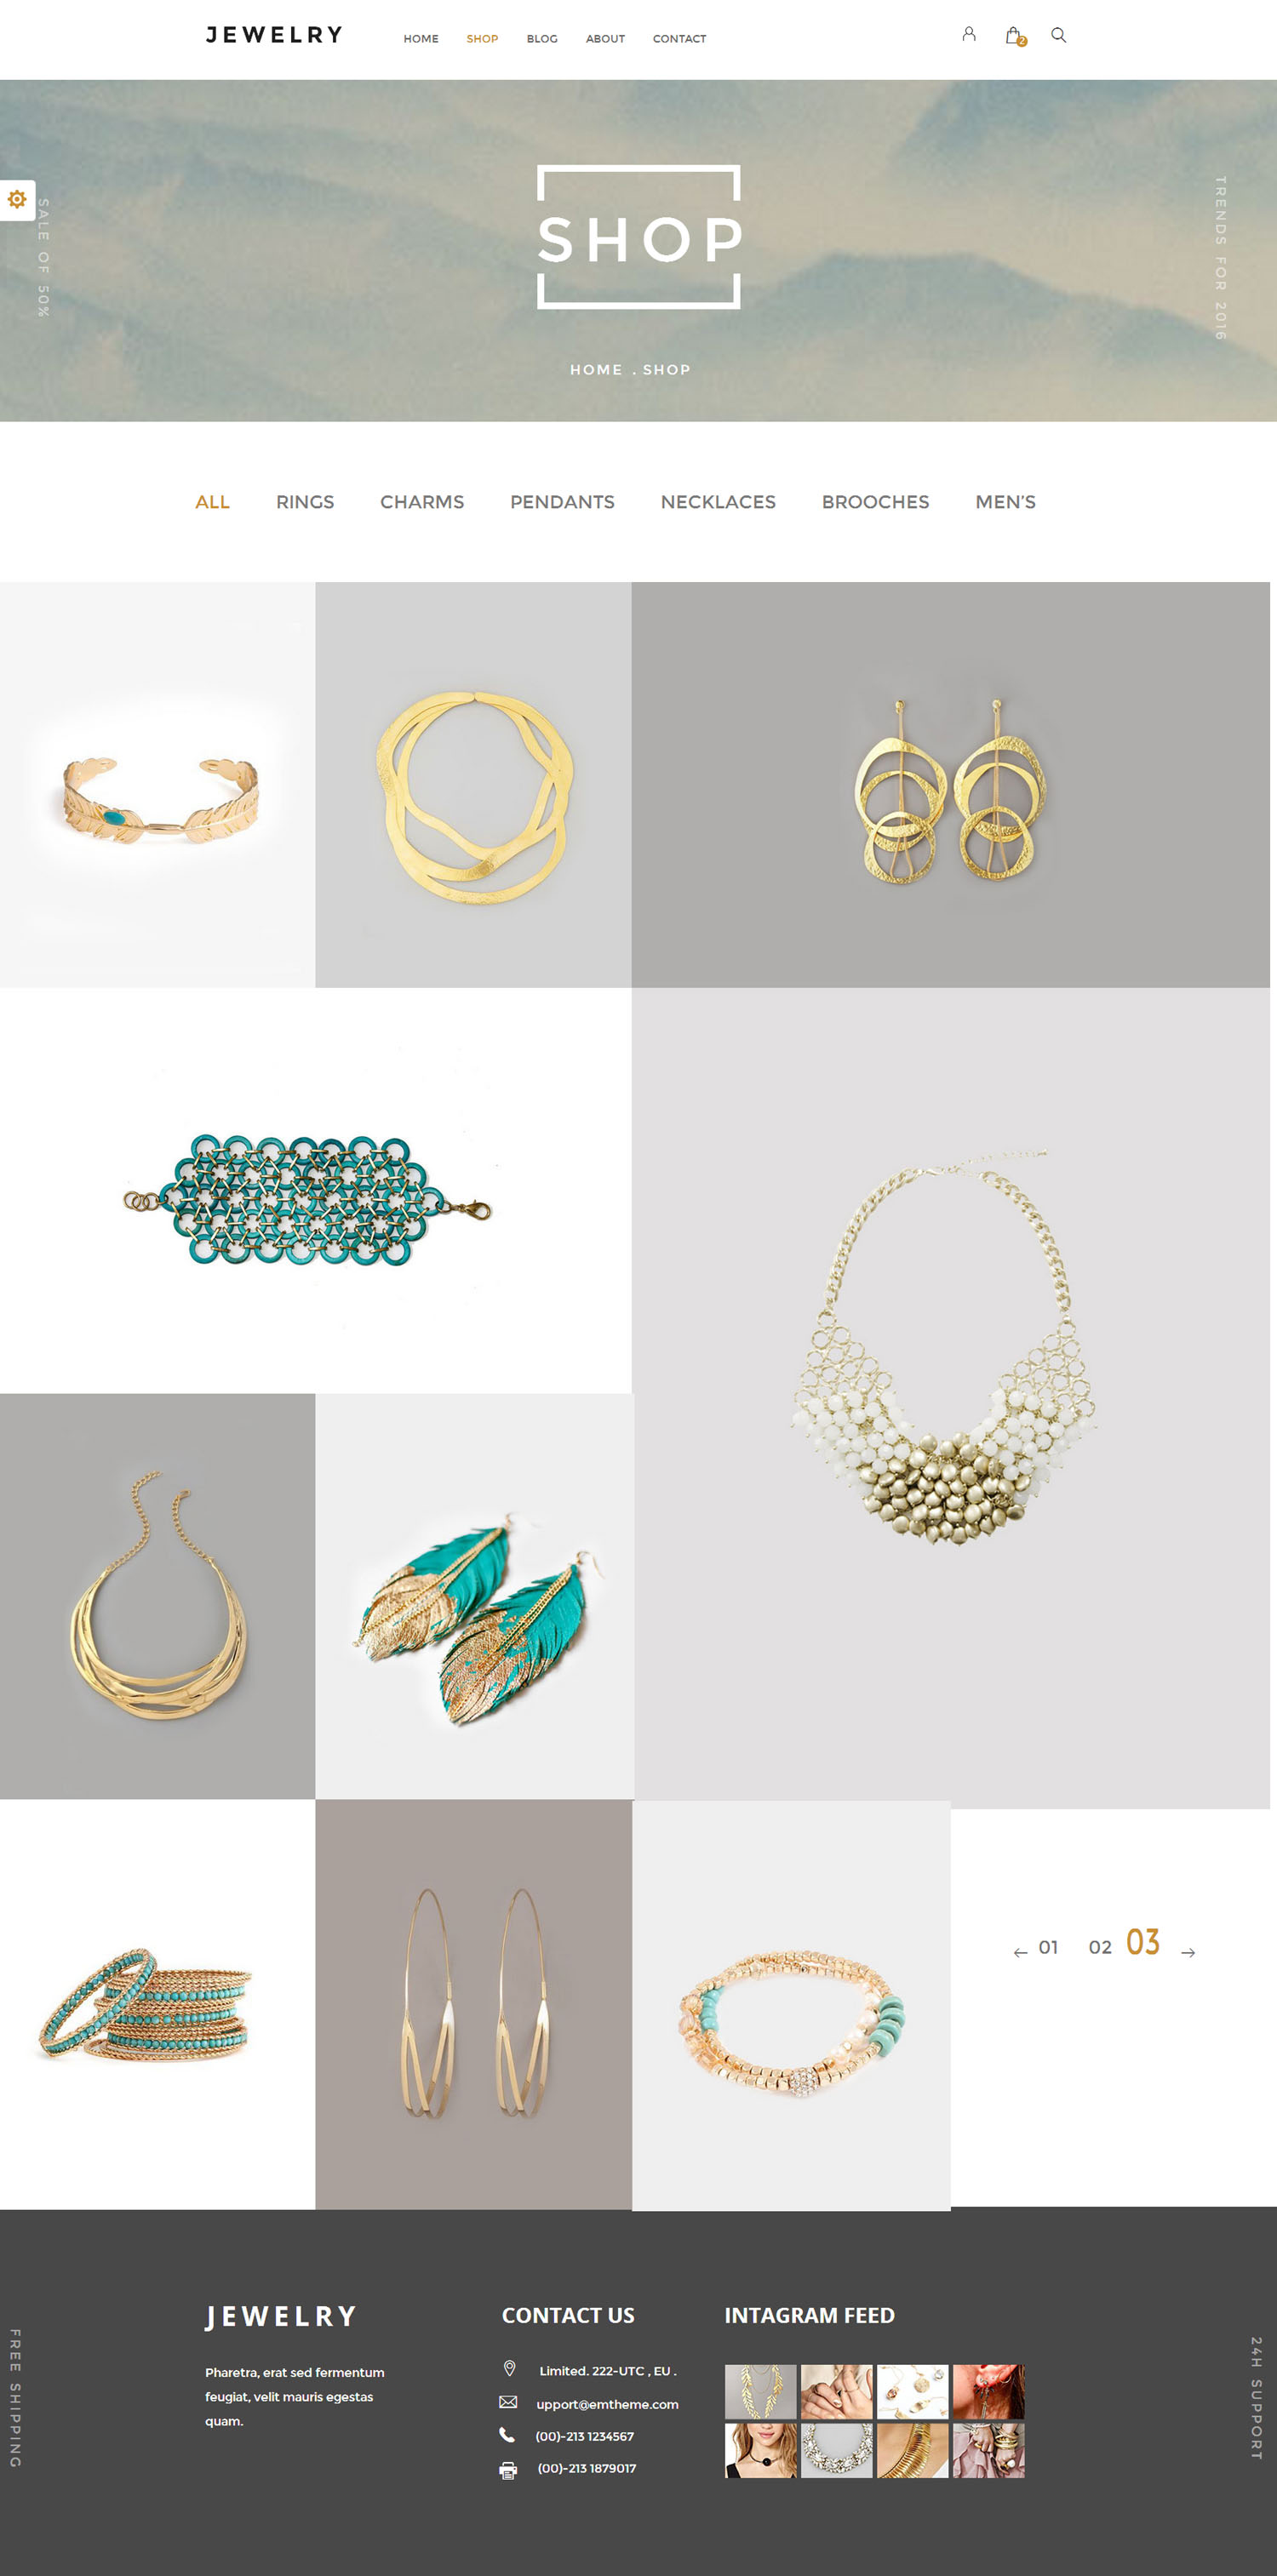 Bootstrap珠宝电商购物网站html模板_html饰品商城模板 - Jewelry3749